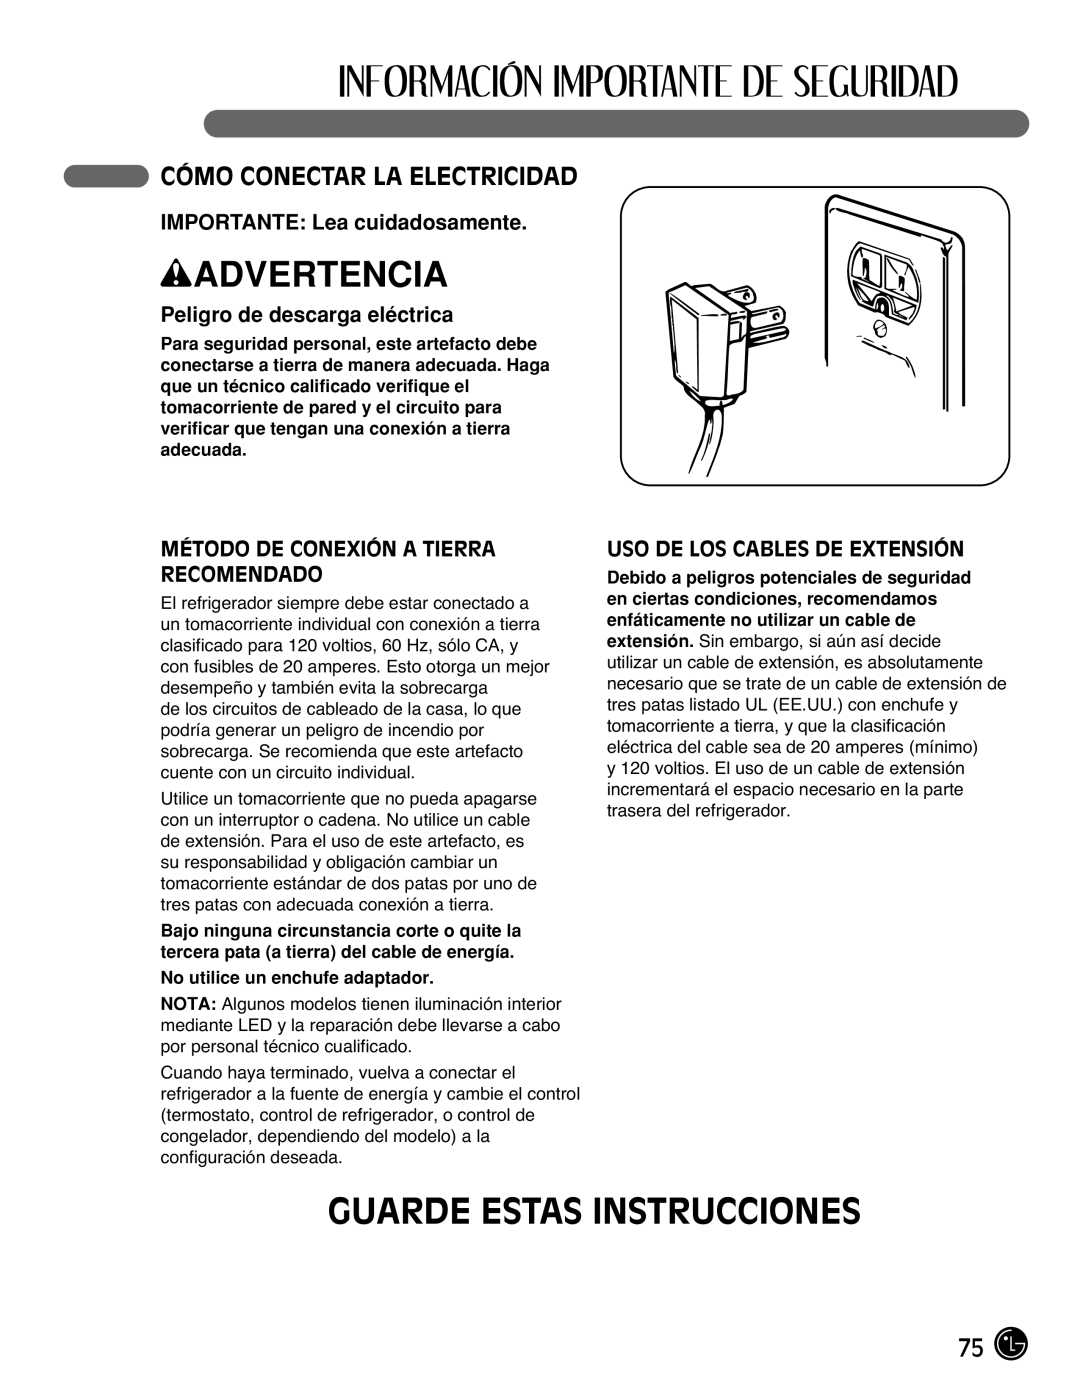 LG Electronics LFC25770 manual Guarde Estas Instrucciones, Cómo Conectar La Electricidad, IMPORTANTE: Lea cuidadosamente 